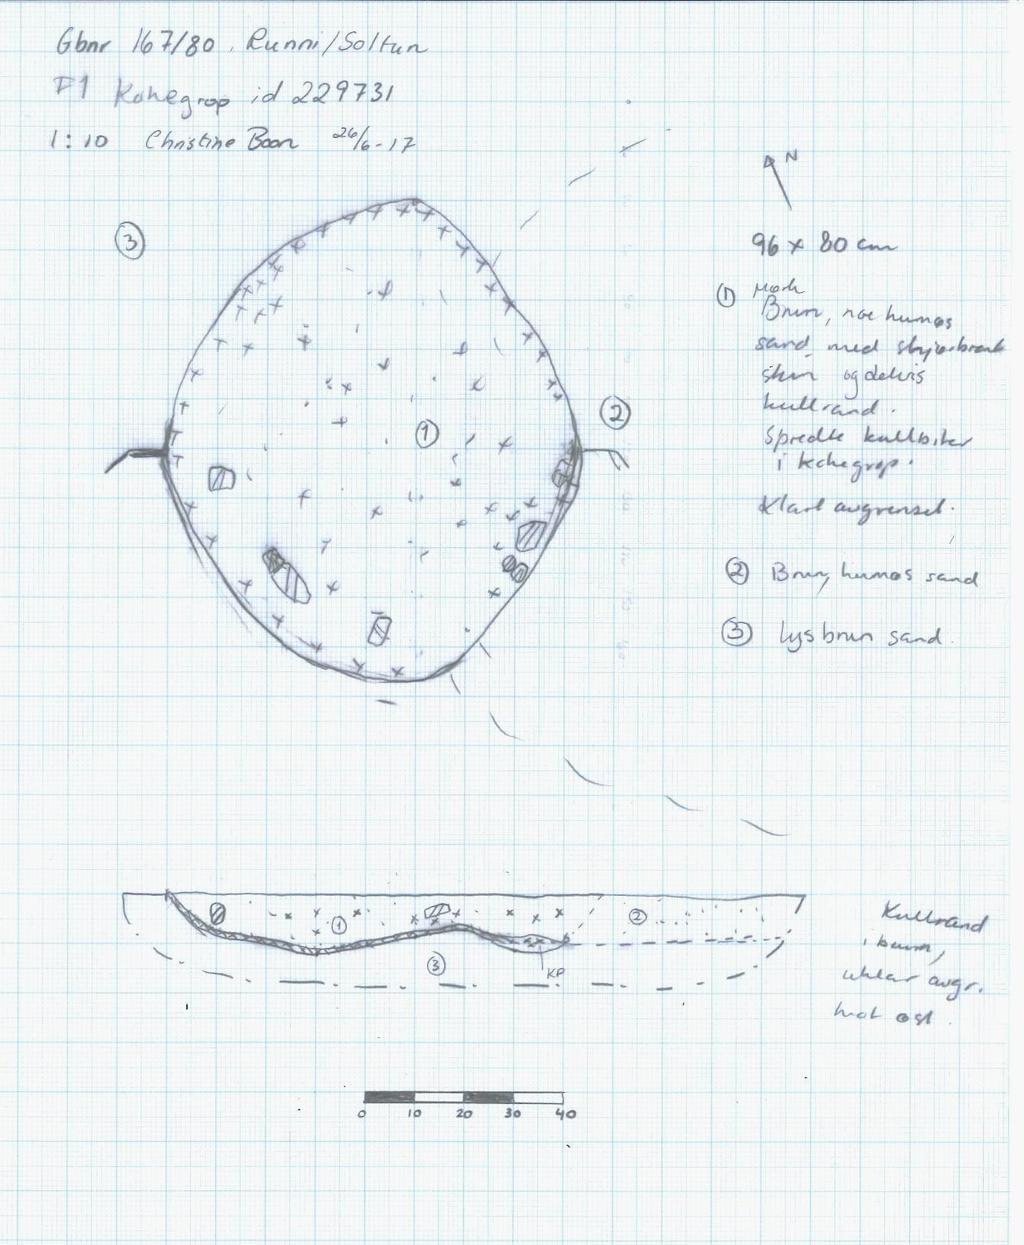 Det a l jreg u l e r i n g Ru n n i Figur 1: Tegning av kokegrop id 229731 i plan og profil Konklusjon Innenfor